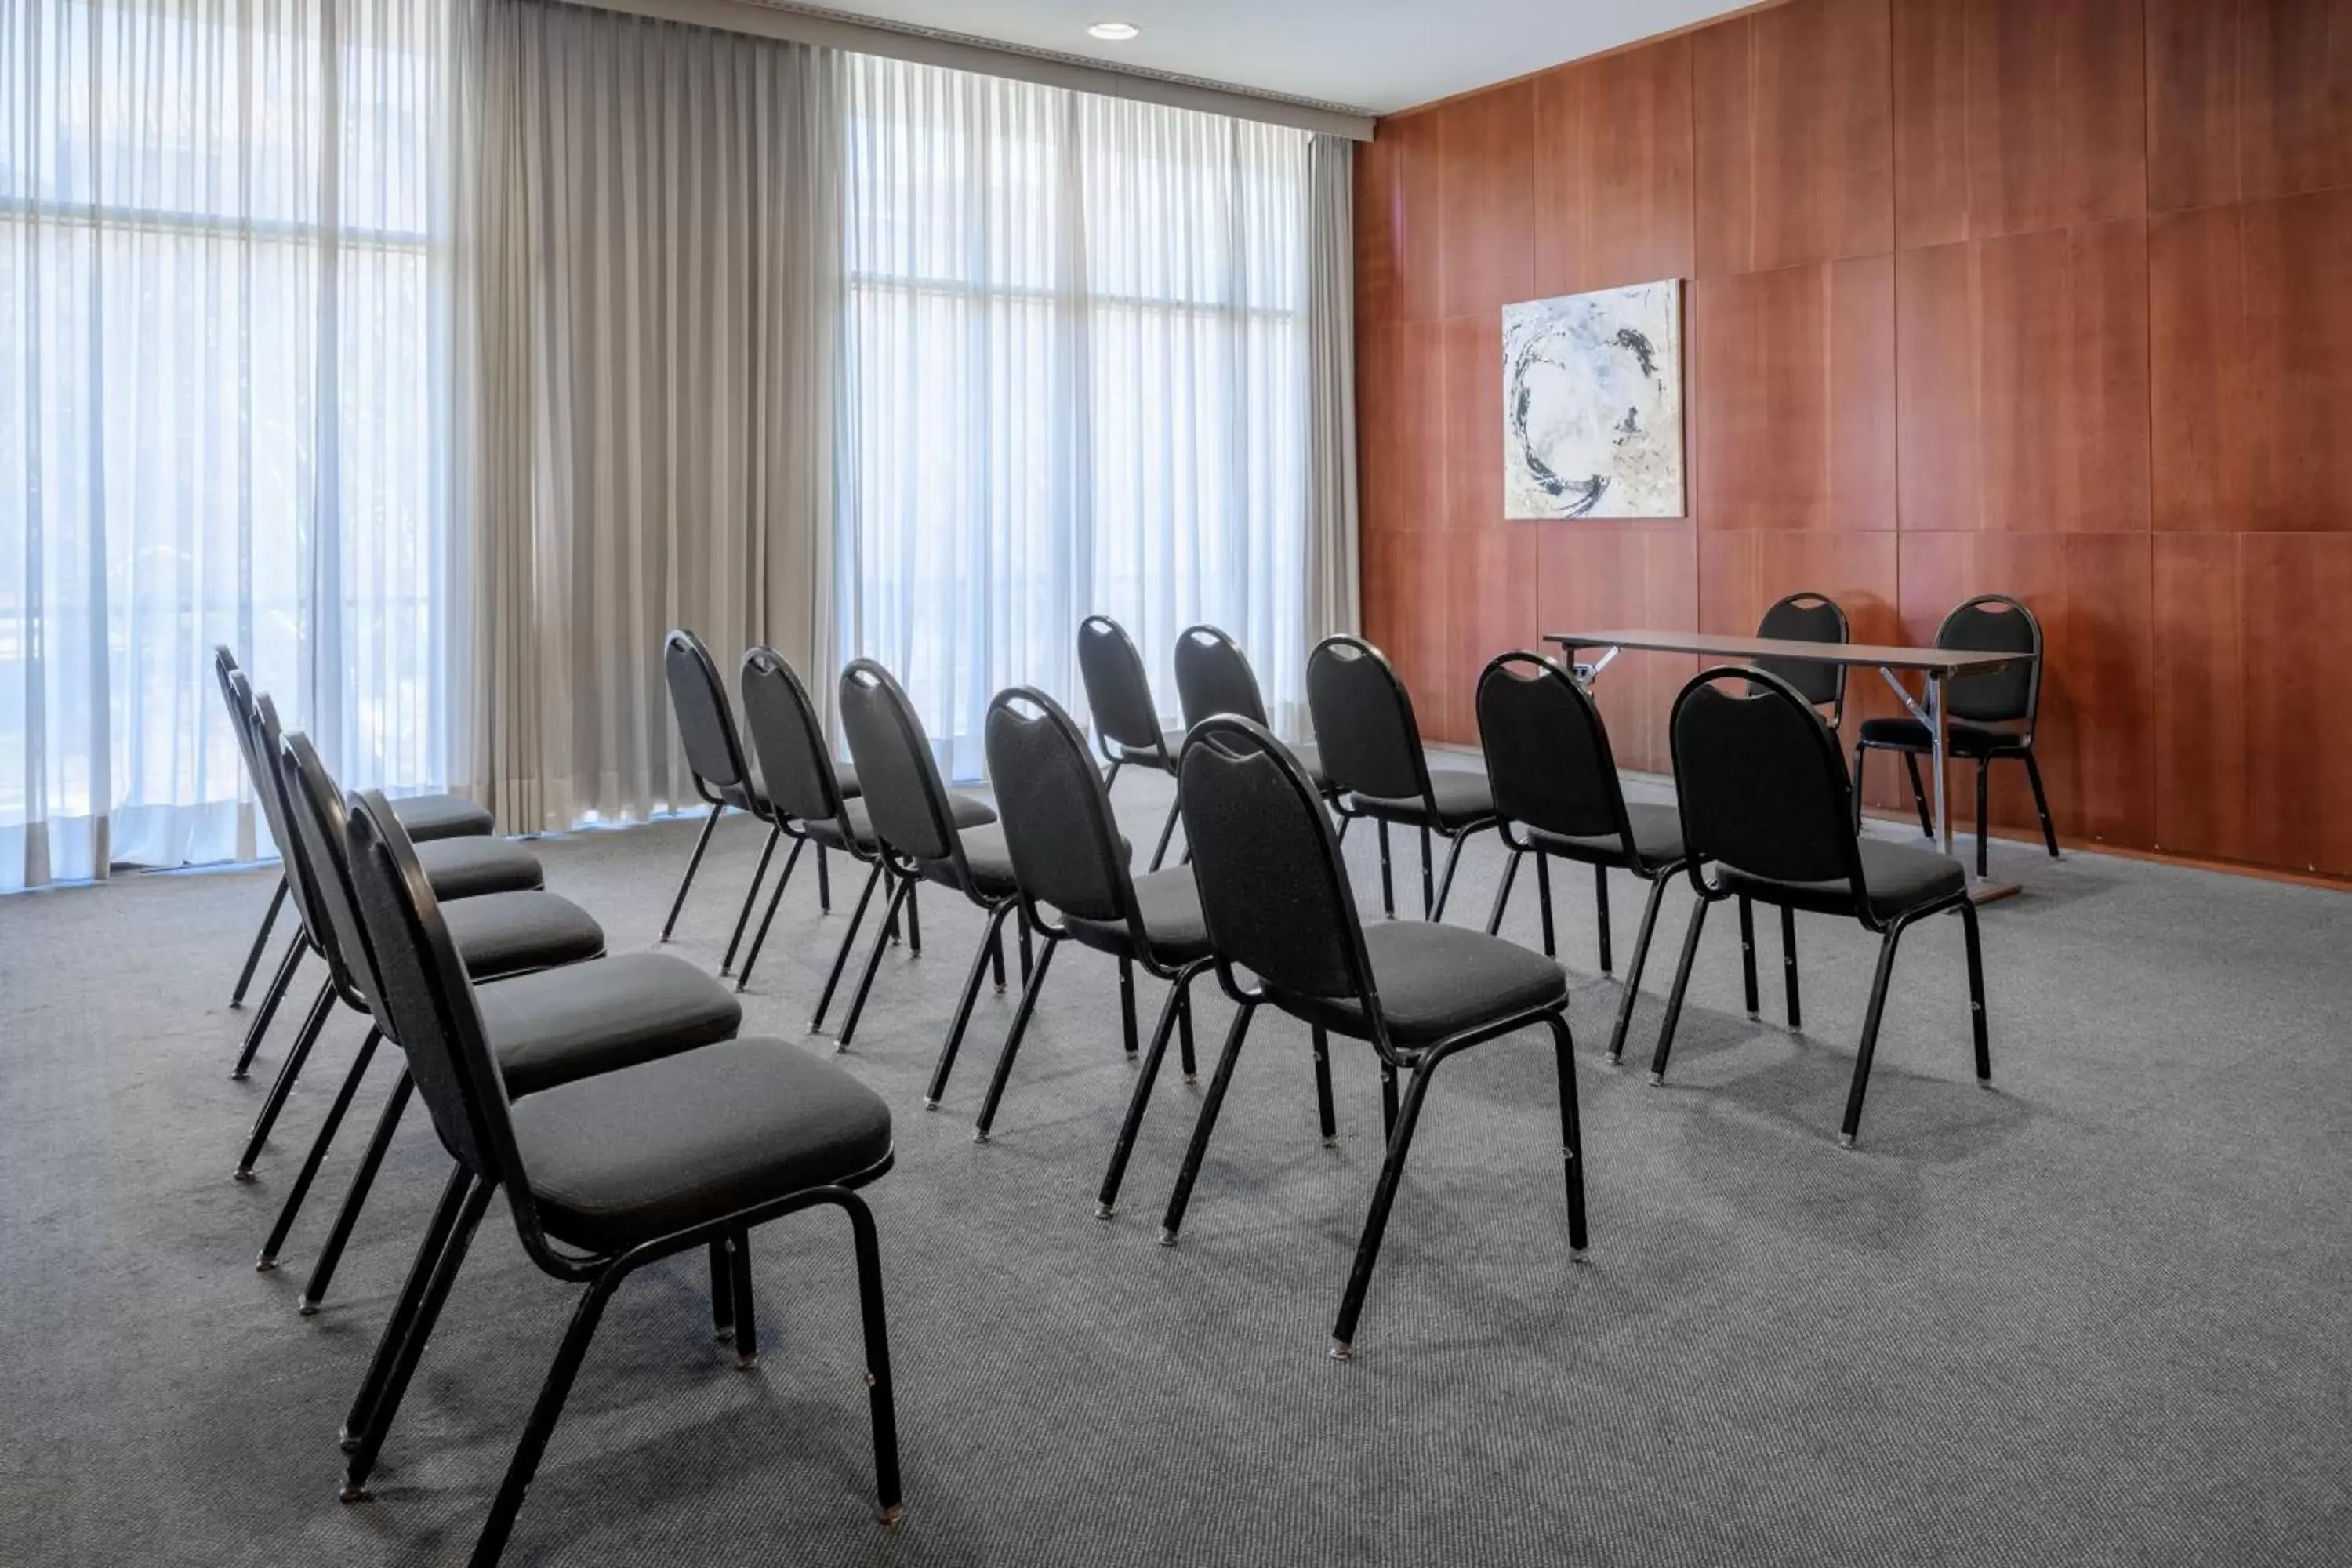 Meeting/conference room in AC Hotel Guadalajara by Marriott, Spain